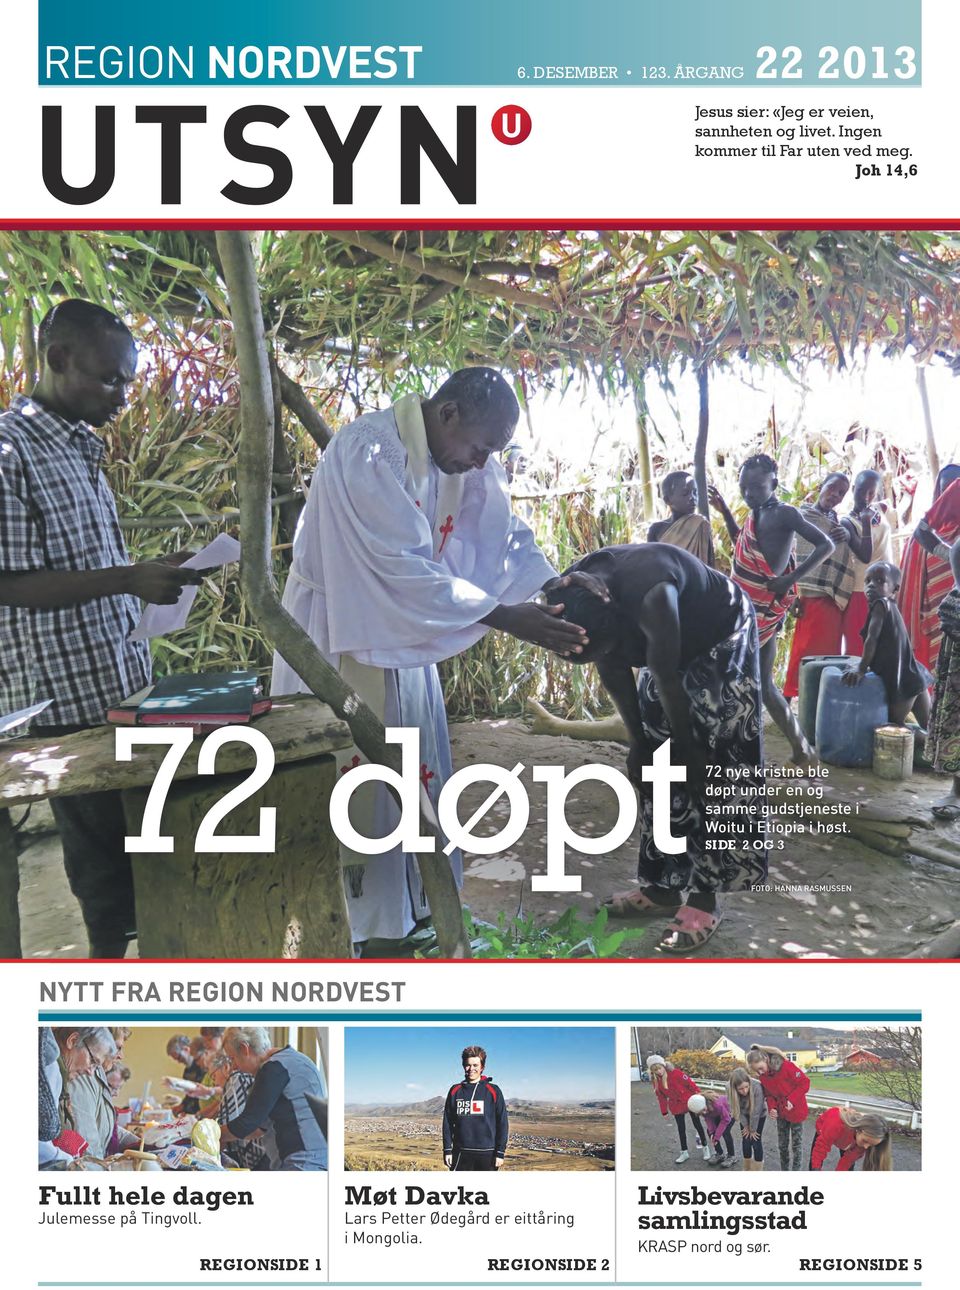 joh 14,6 72 døpt 72 Woitu nye kristne ble døpt under en og samme gudstjeneste i Woitu i etiopia i høst.